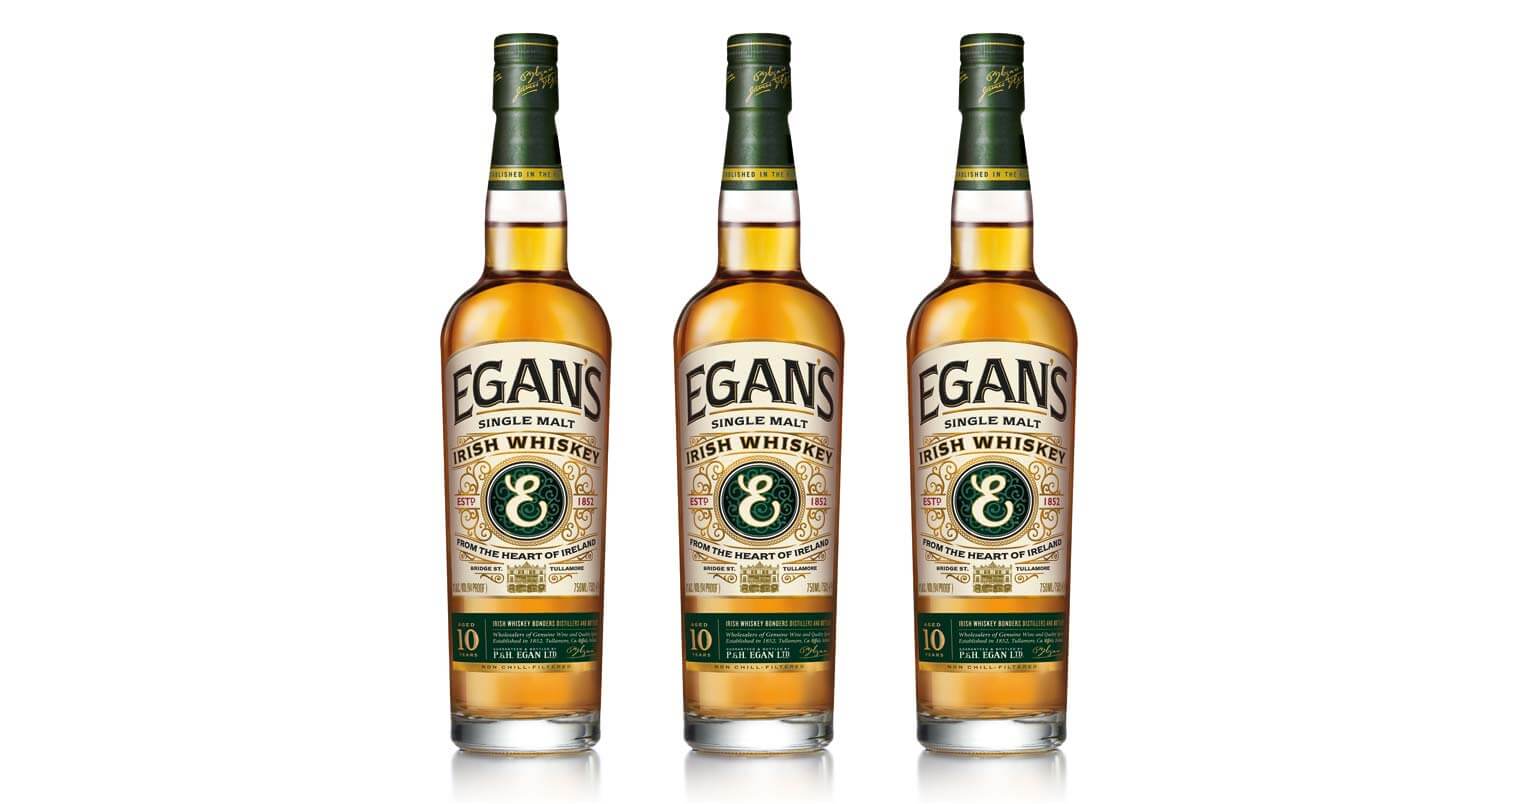 P & H Egan Ltd. bottles